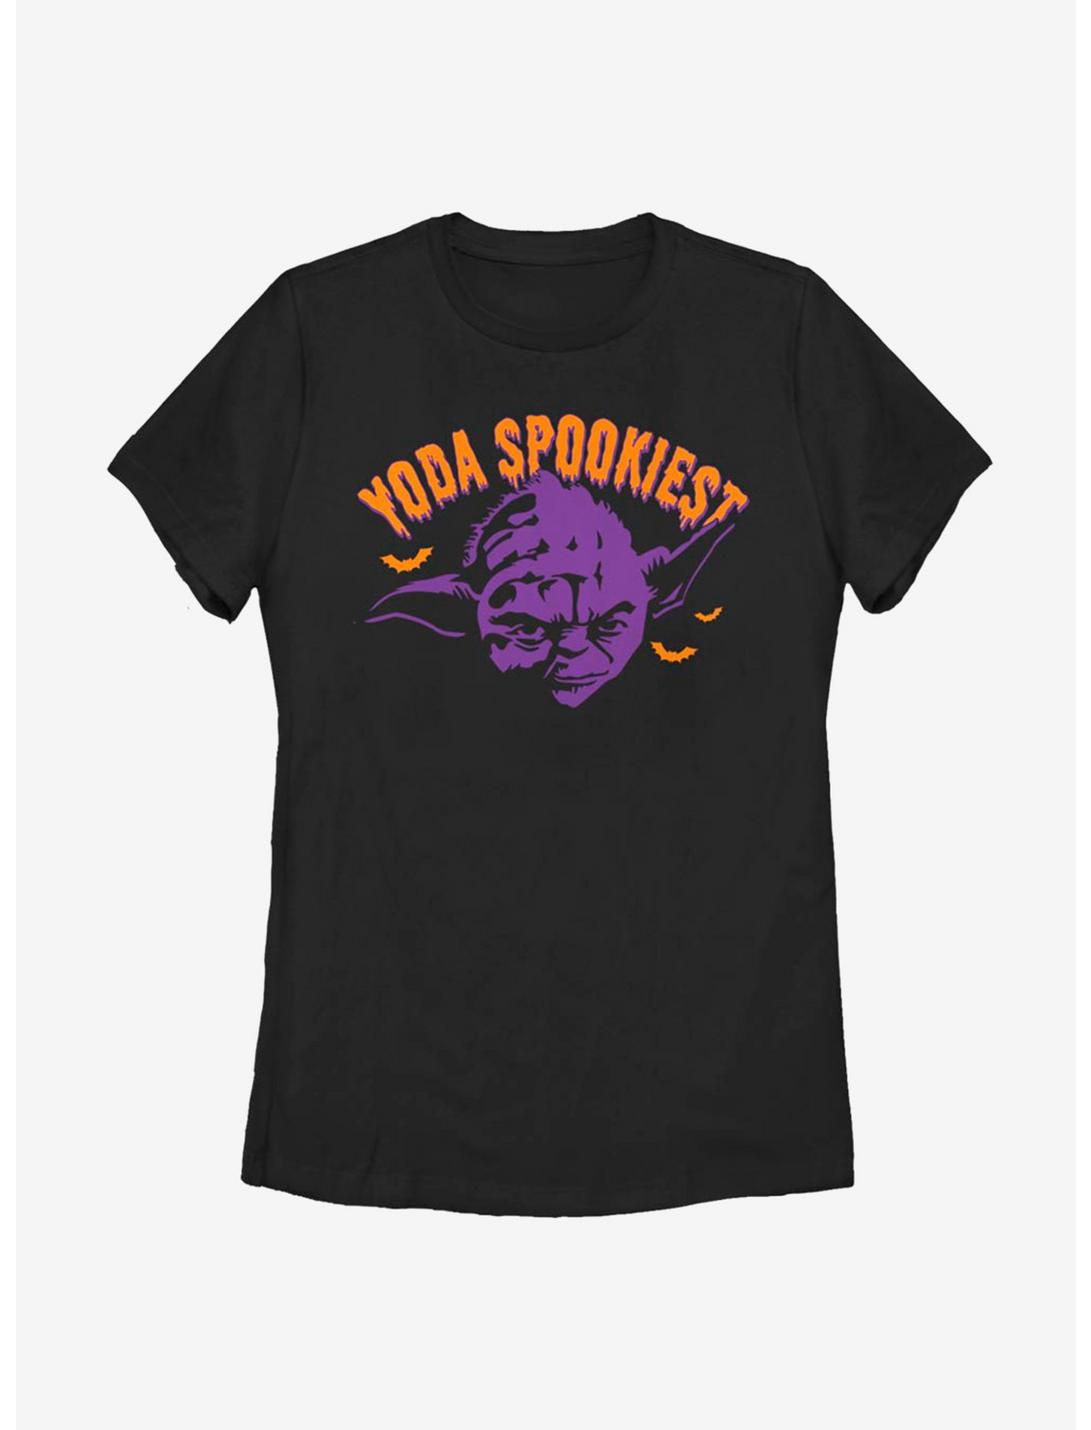 Star Wars Yoda Spookiest Womens T-Shirt, BLACK, hi-res